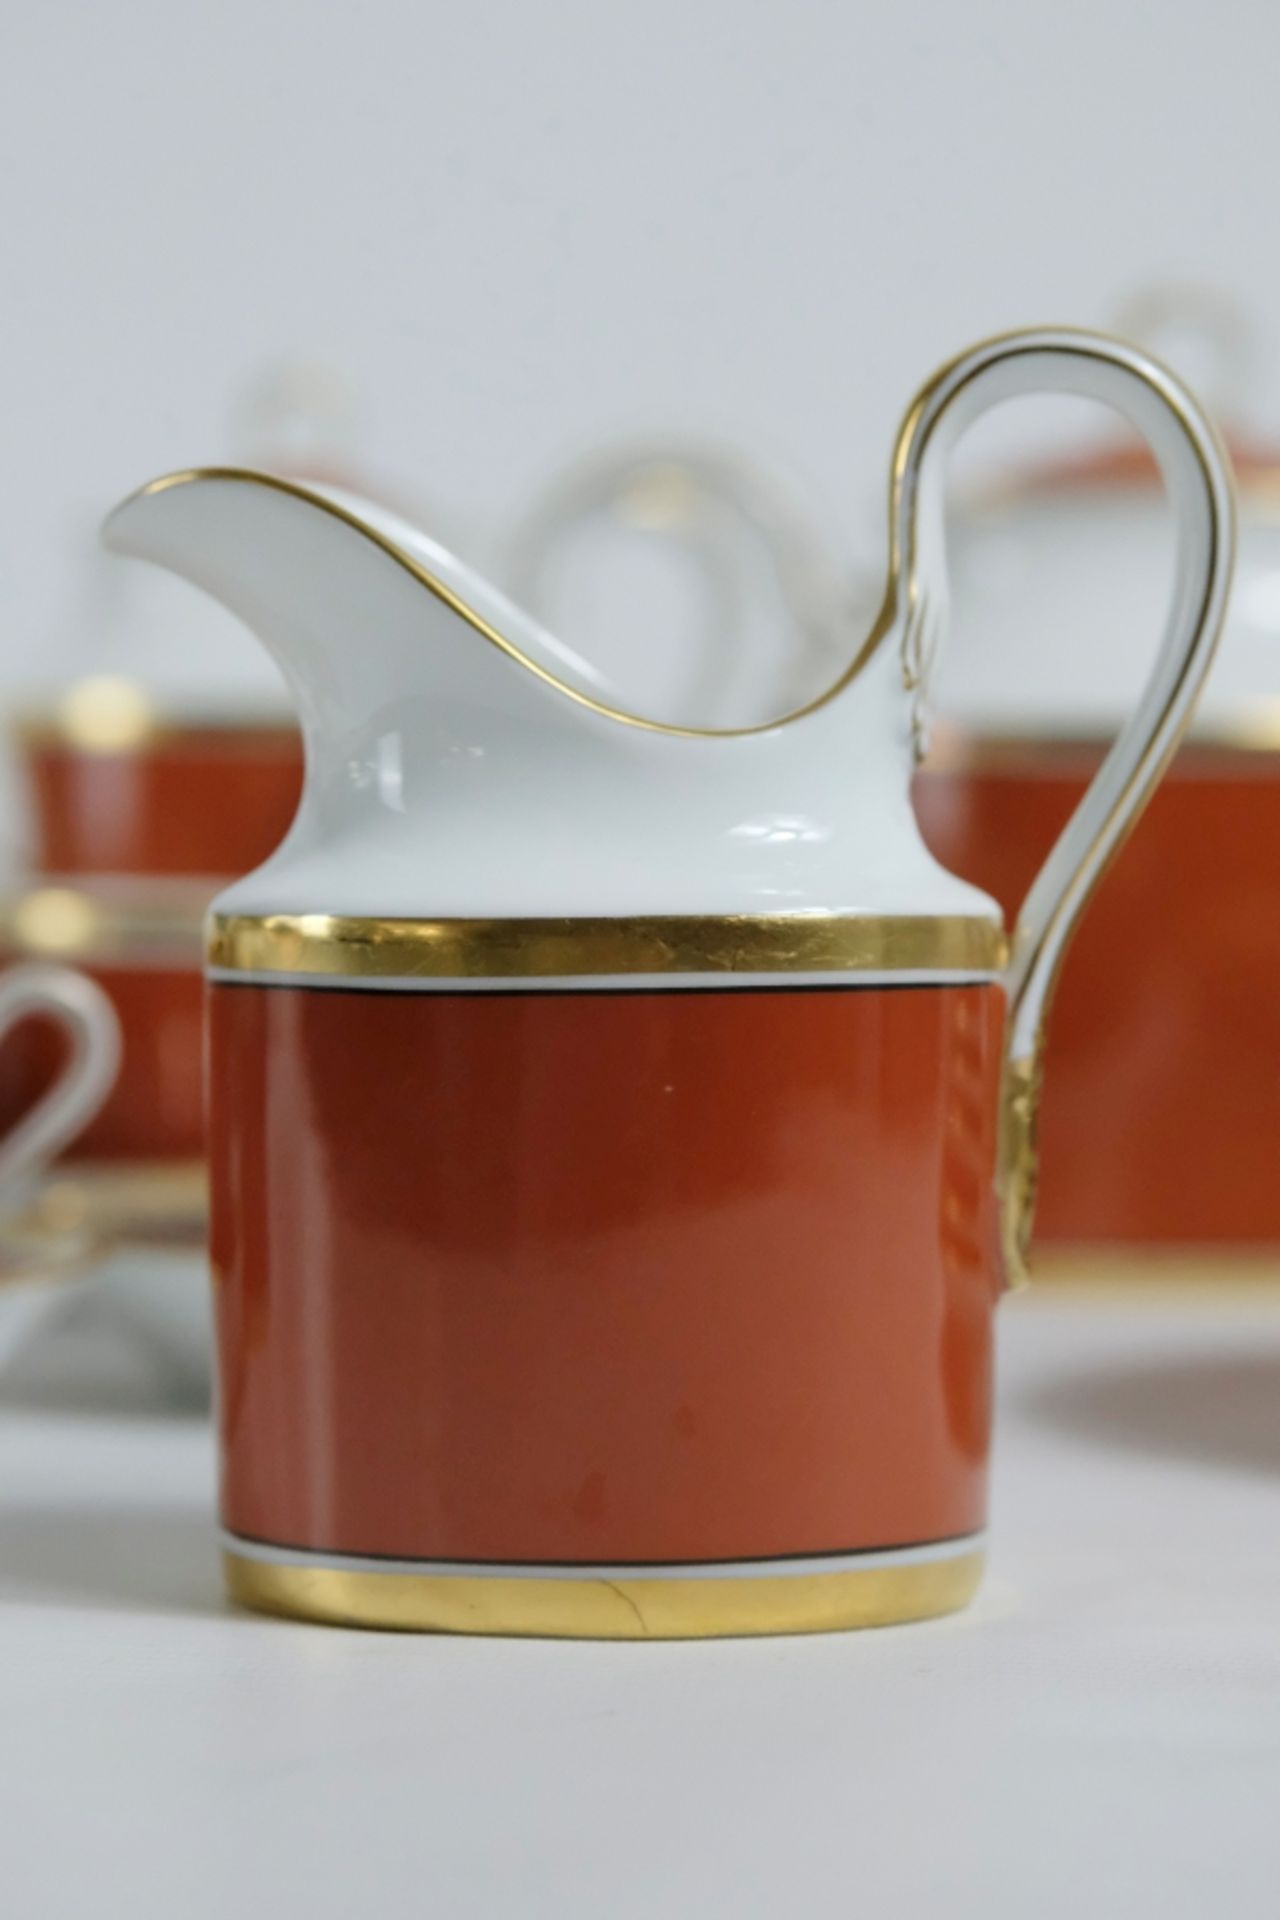 Richard Ginori "Contessa" Tee-/Kaffeeservice, Porzellan, Weiß und Terracotta mit Goldrand, bestehen - Bild 6 aus 8